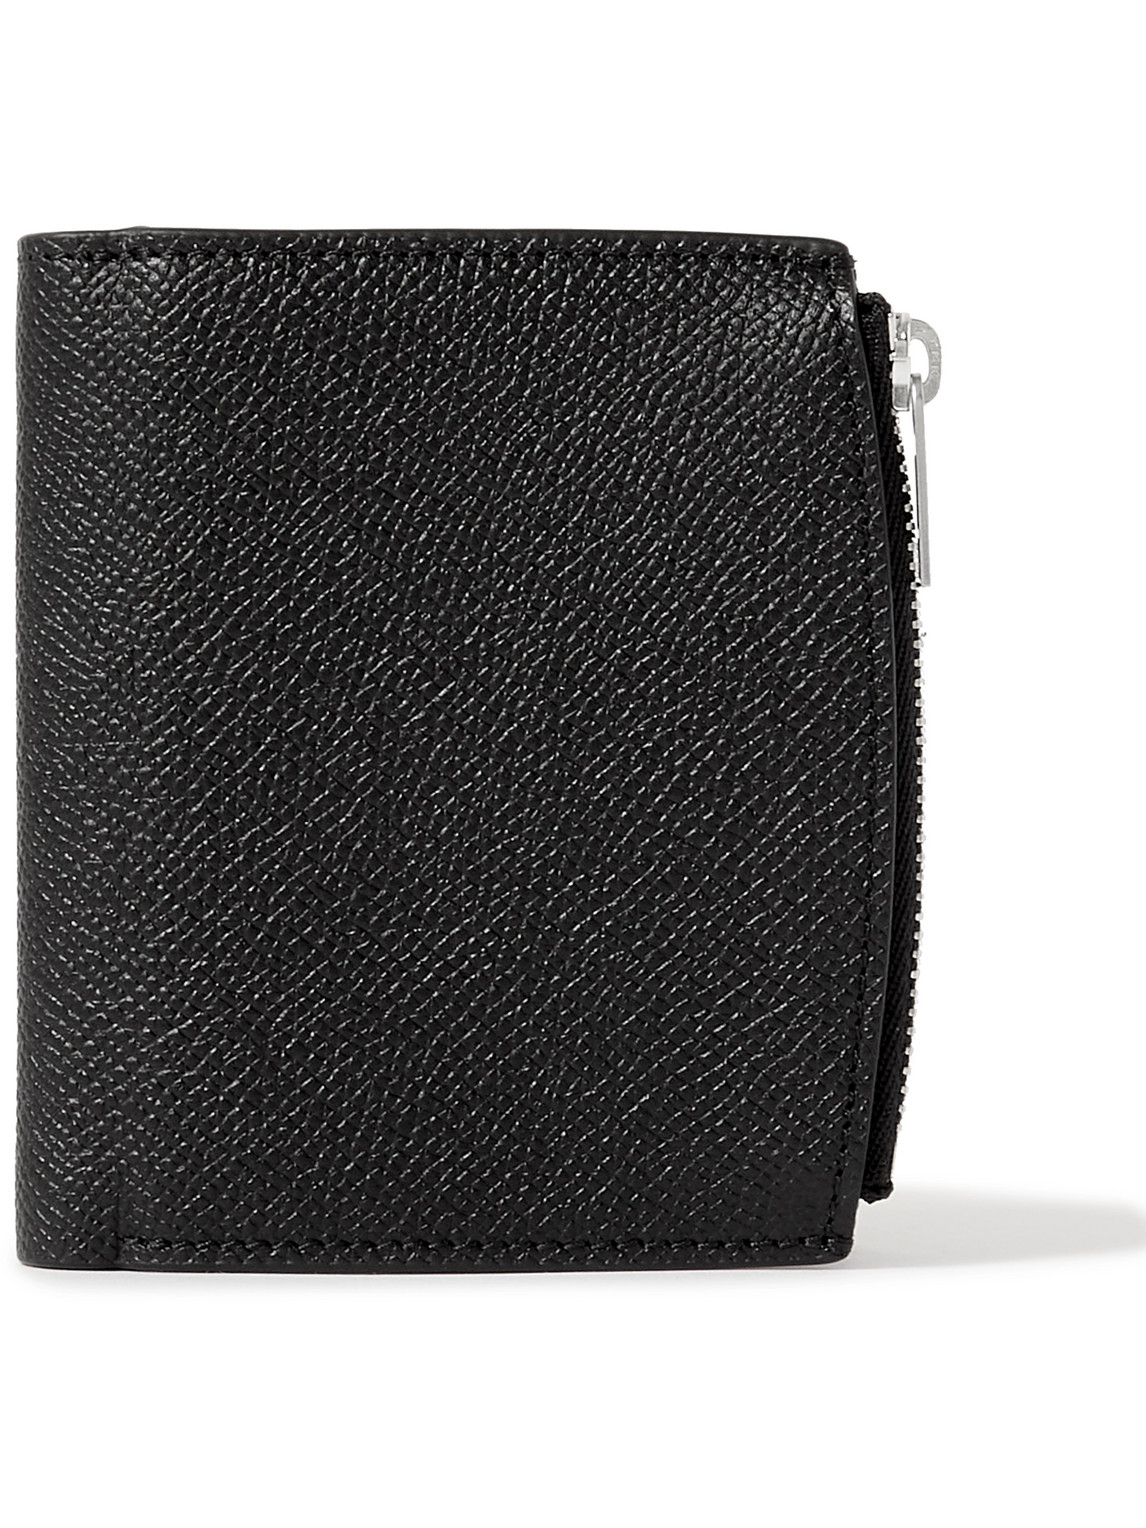 Maison Margiela Black Leather Zip-around Wallet